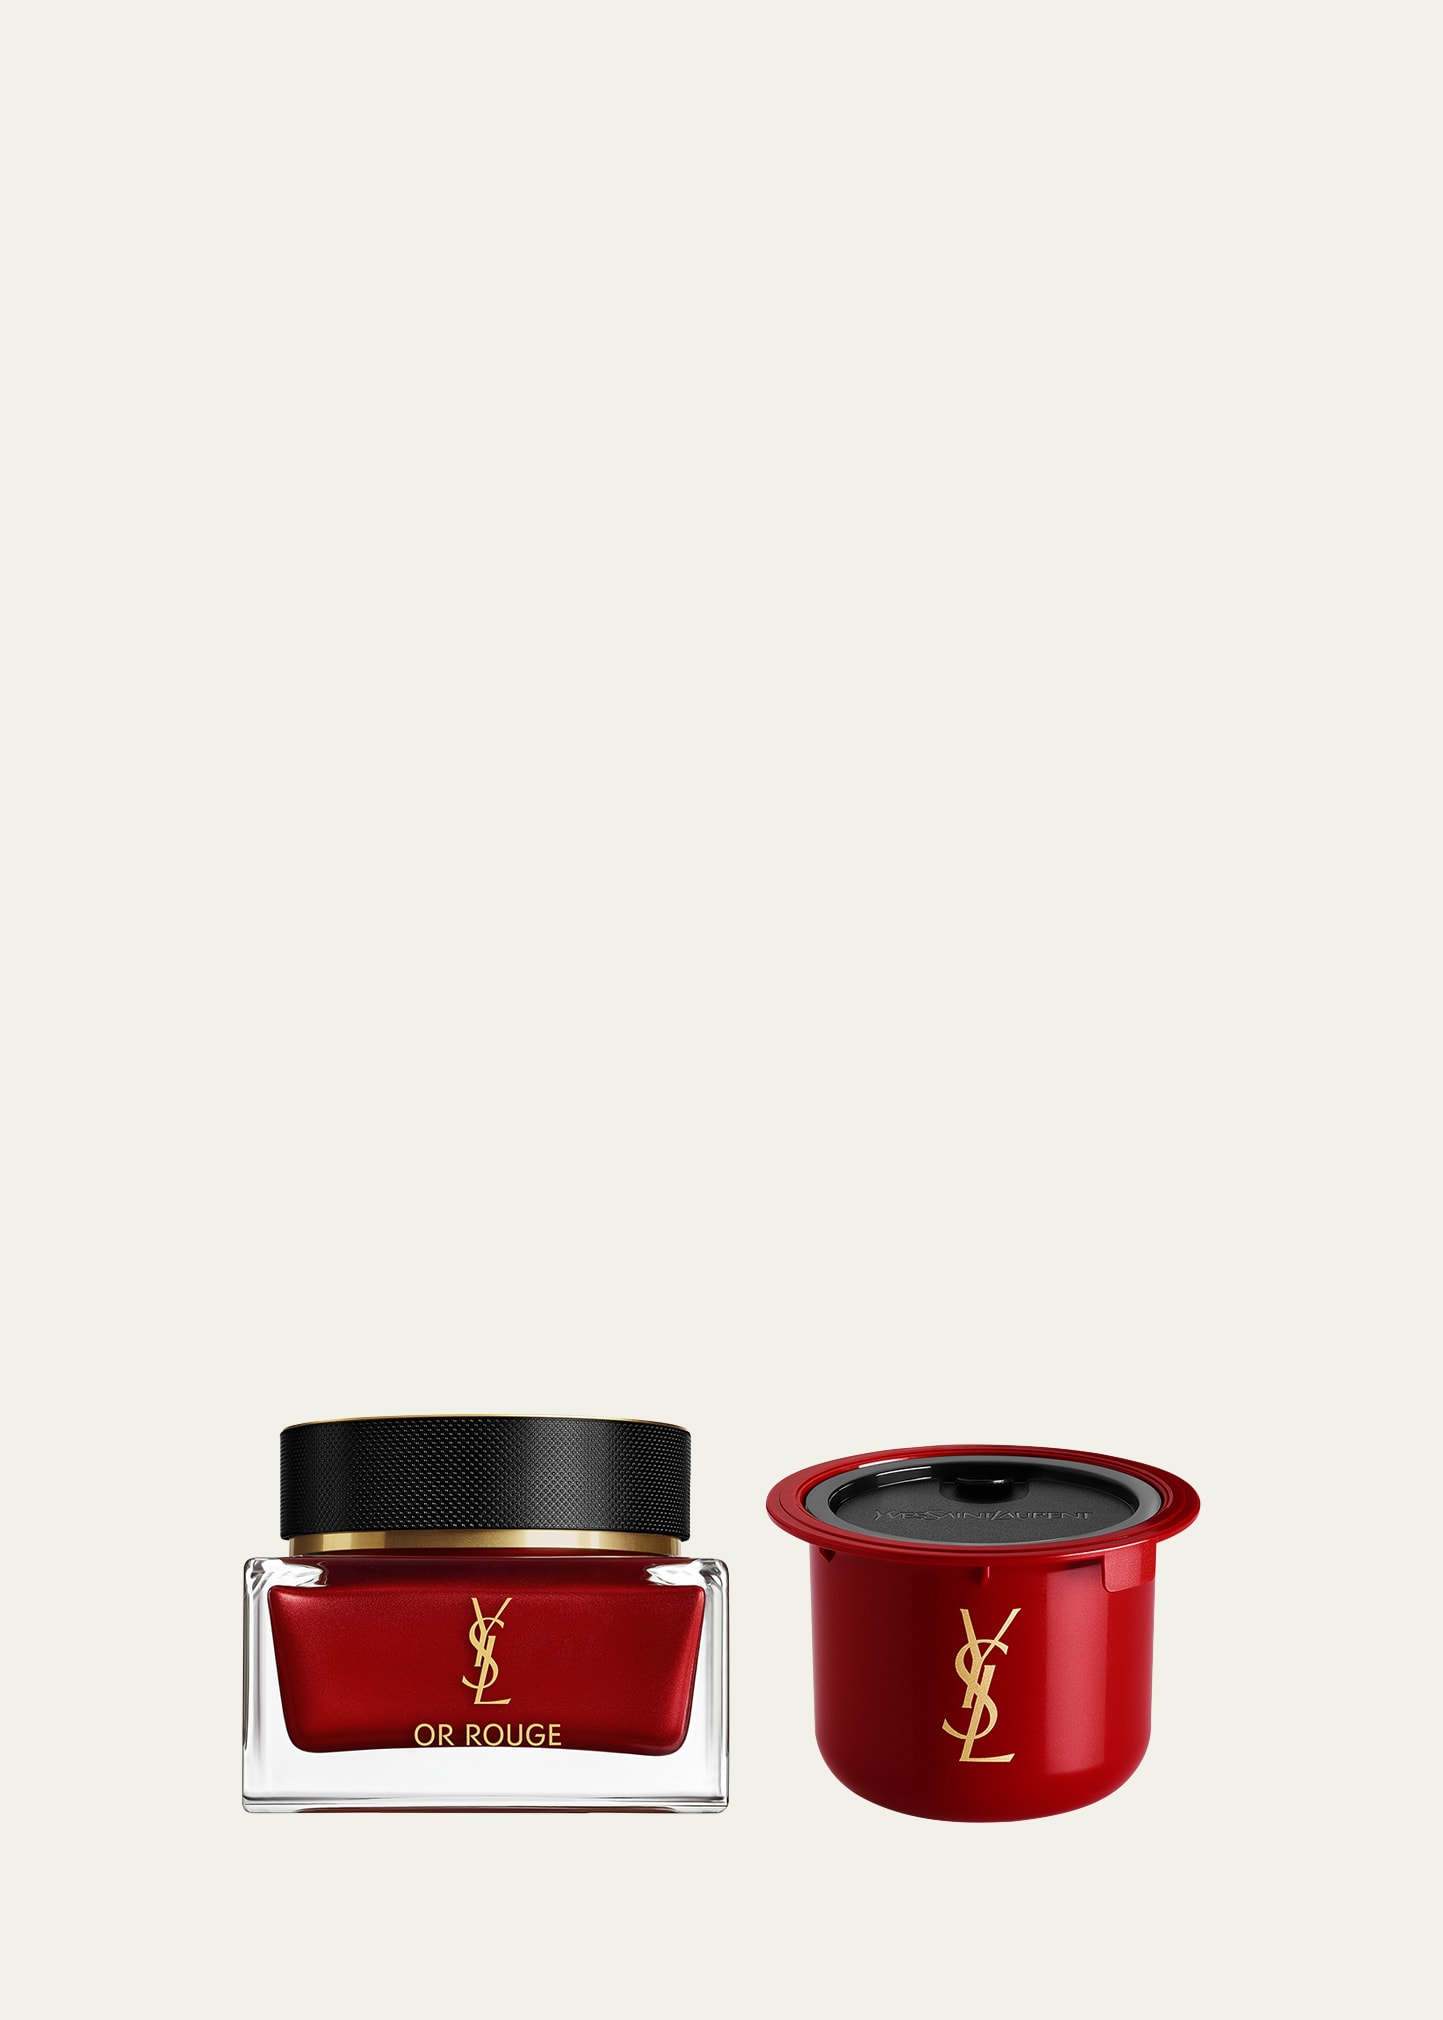 Yves Saint Laurent Beaute Or Rouge Crème Riche, 0.5 oz.